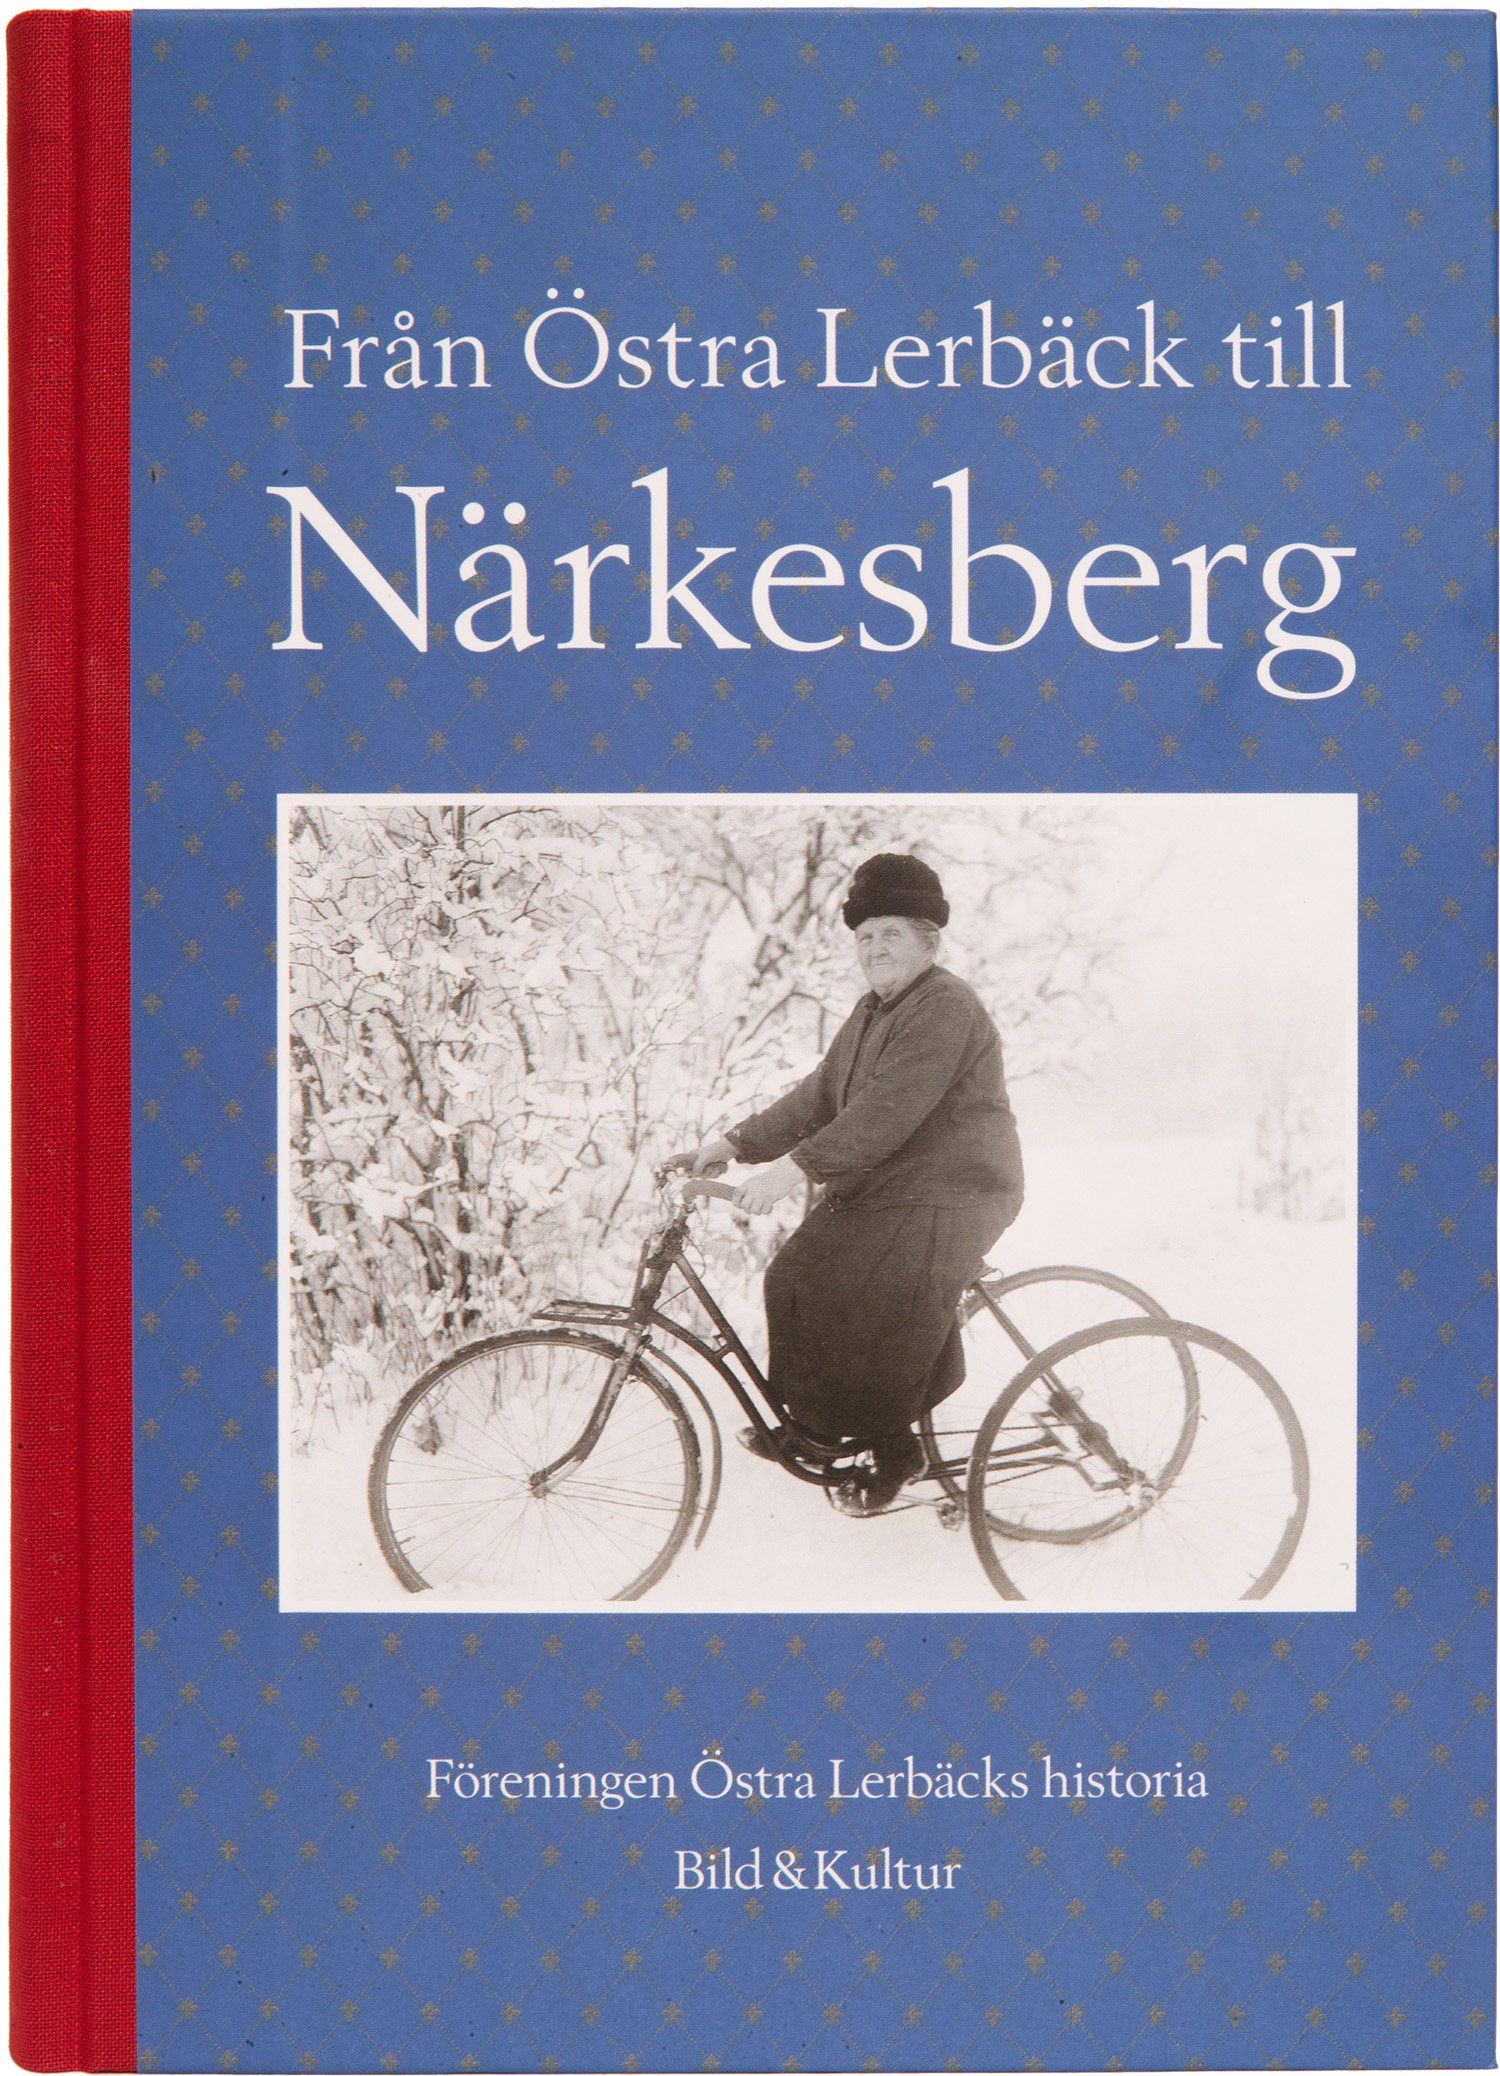 Omslag på boken Från Östra Lerbäck till Närkesberg